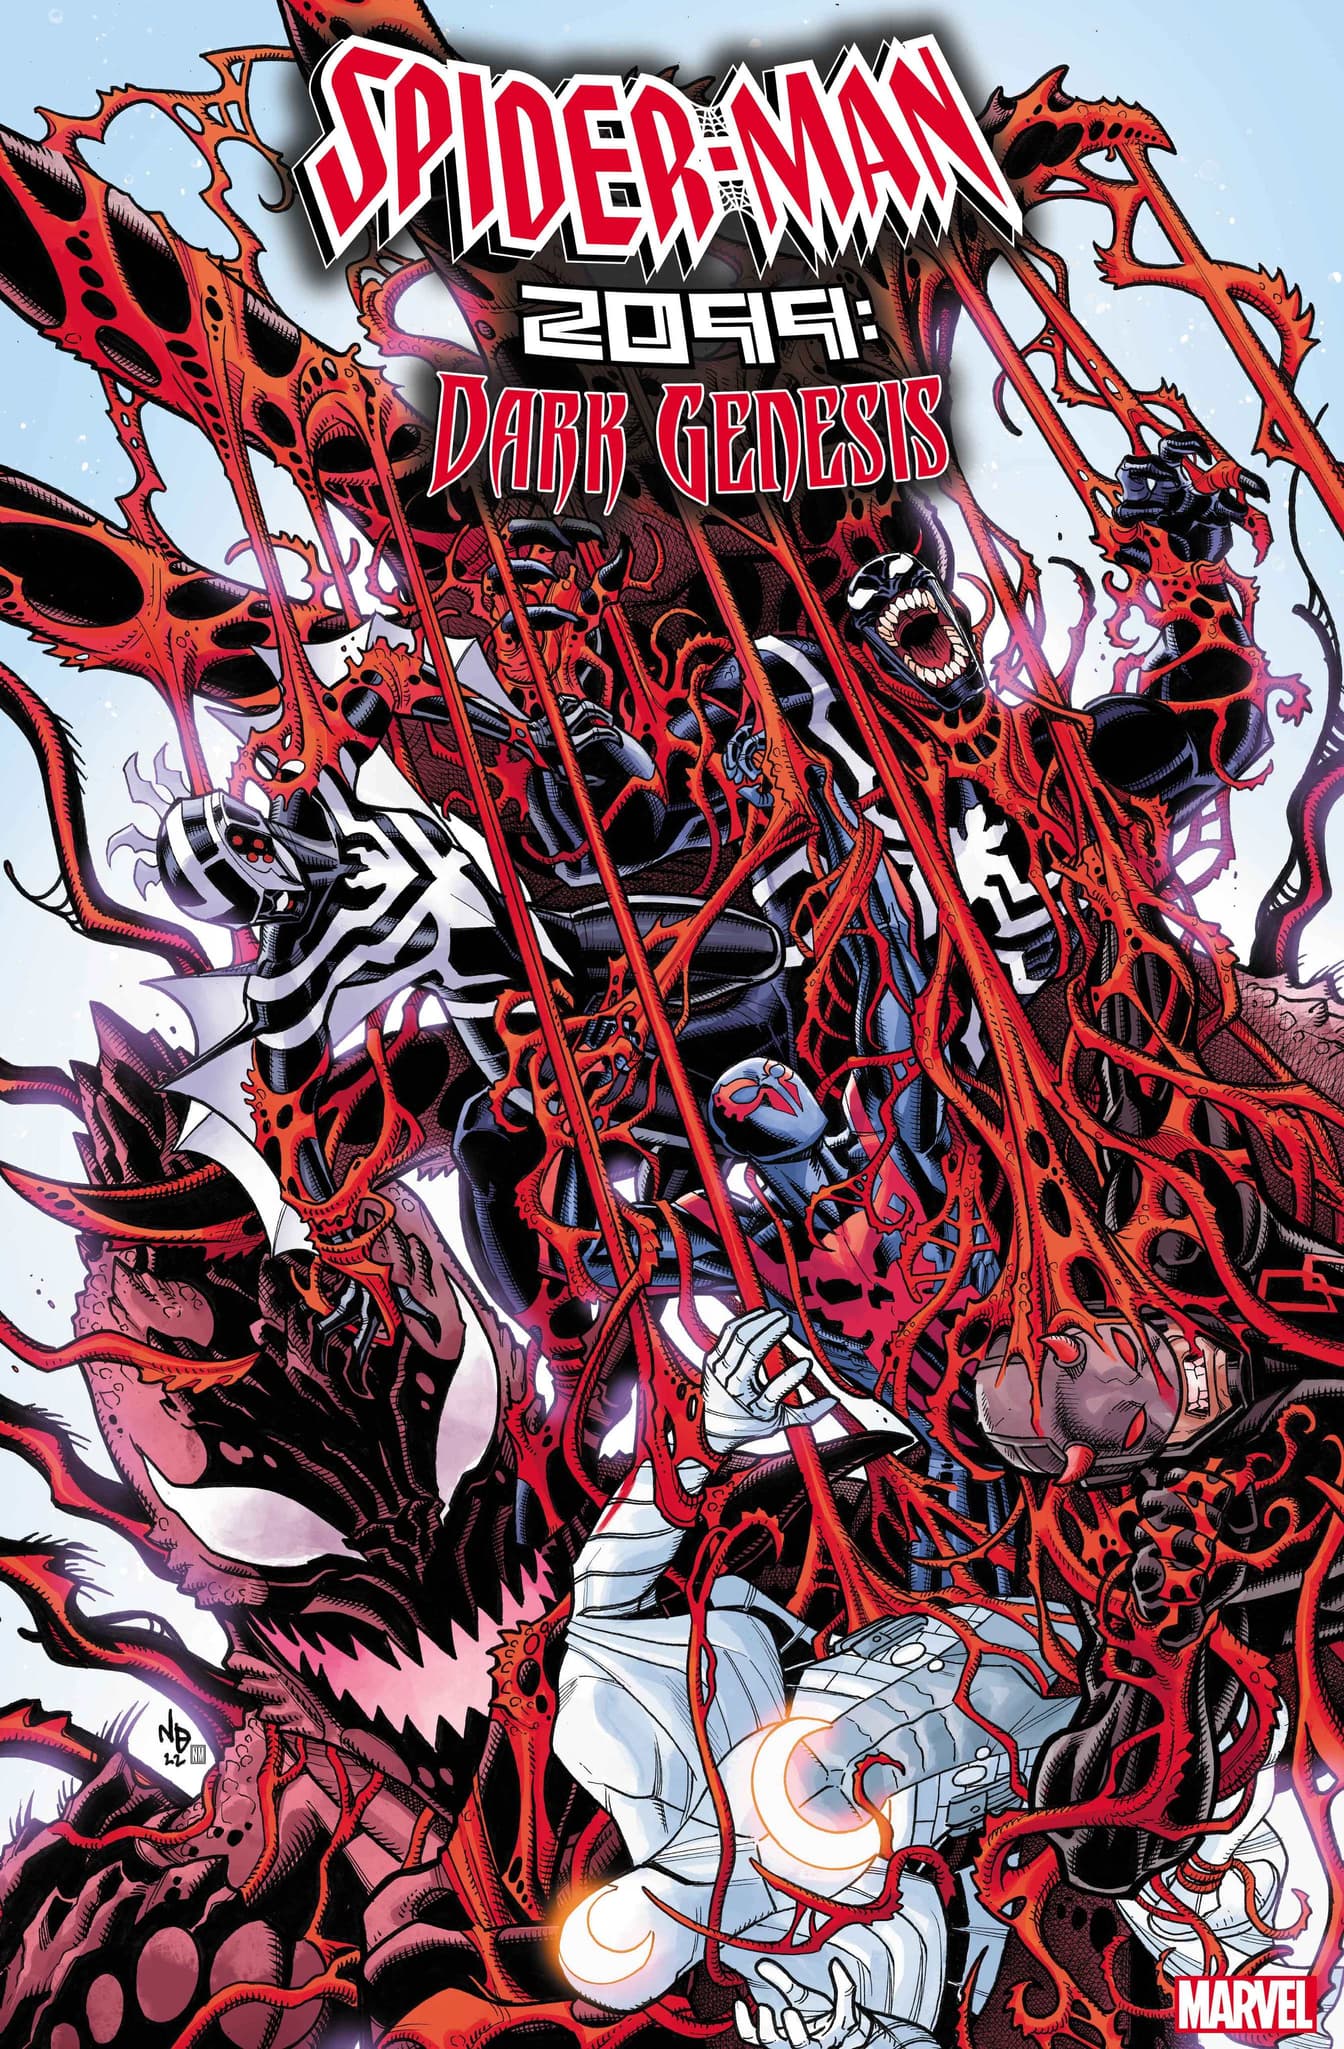 SPIDER-MAN 2099: DARK GENESIS #4 cover by Nick Bradshaw